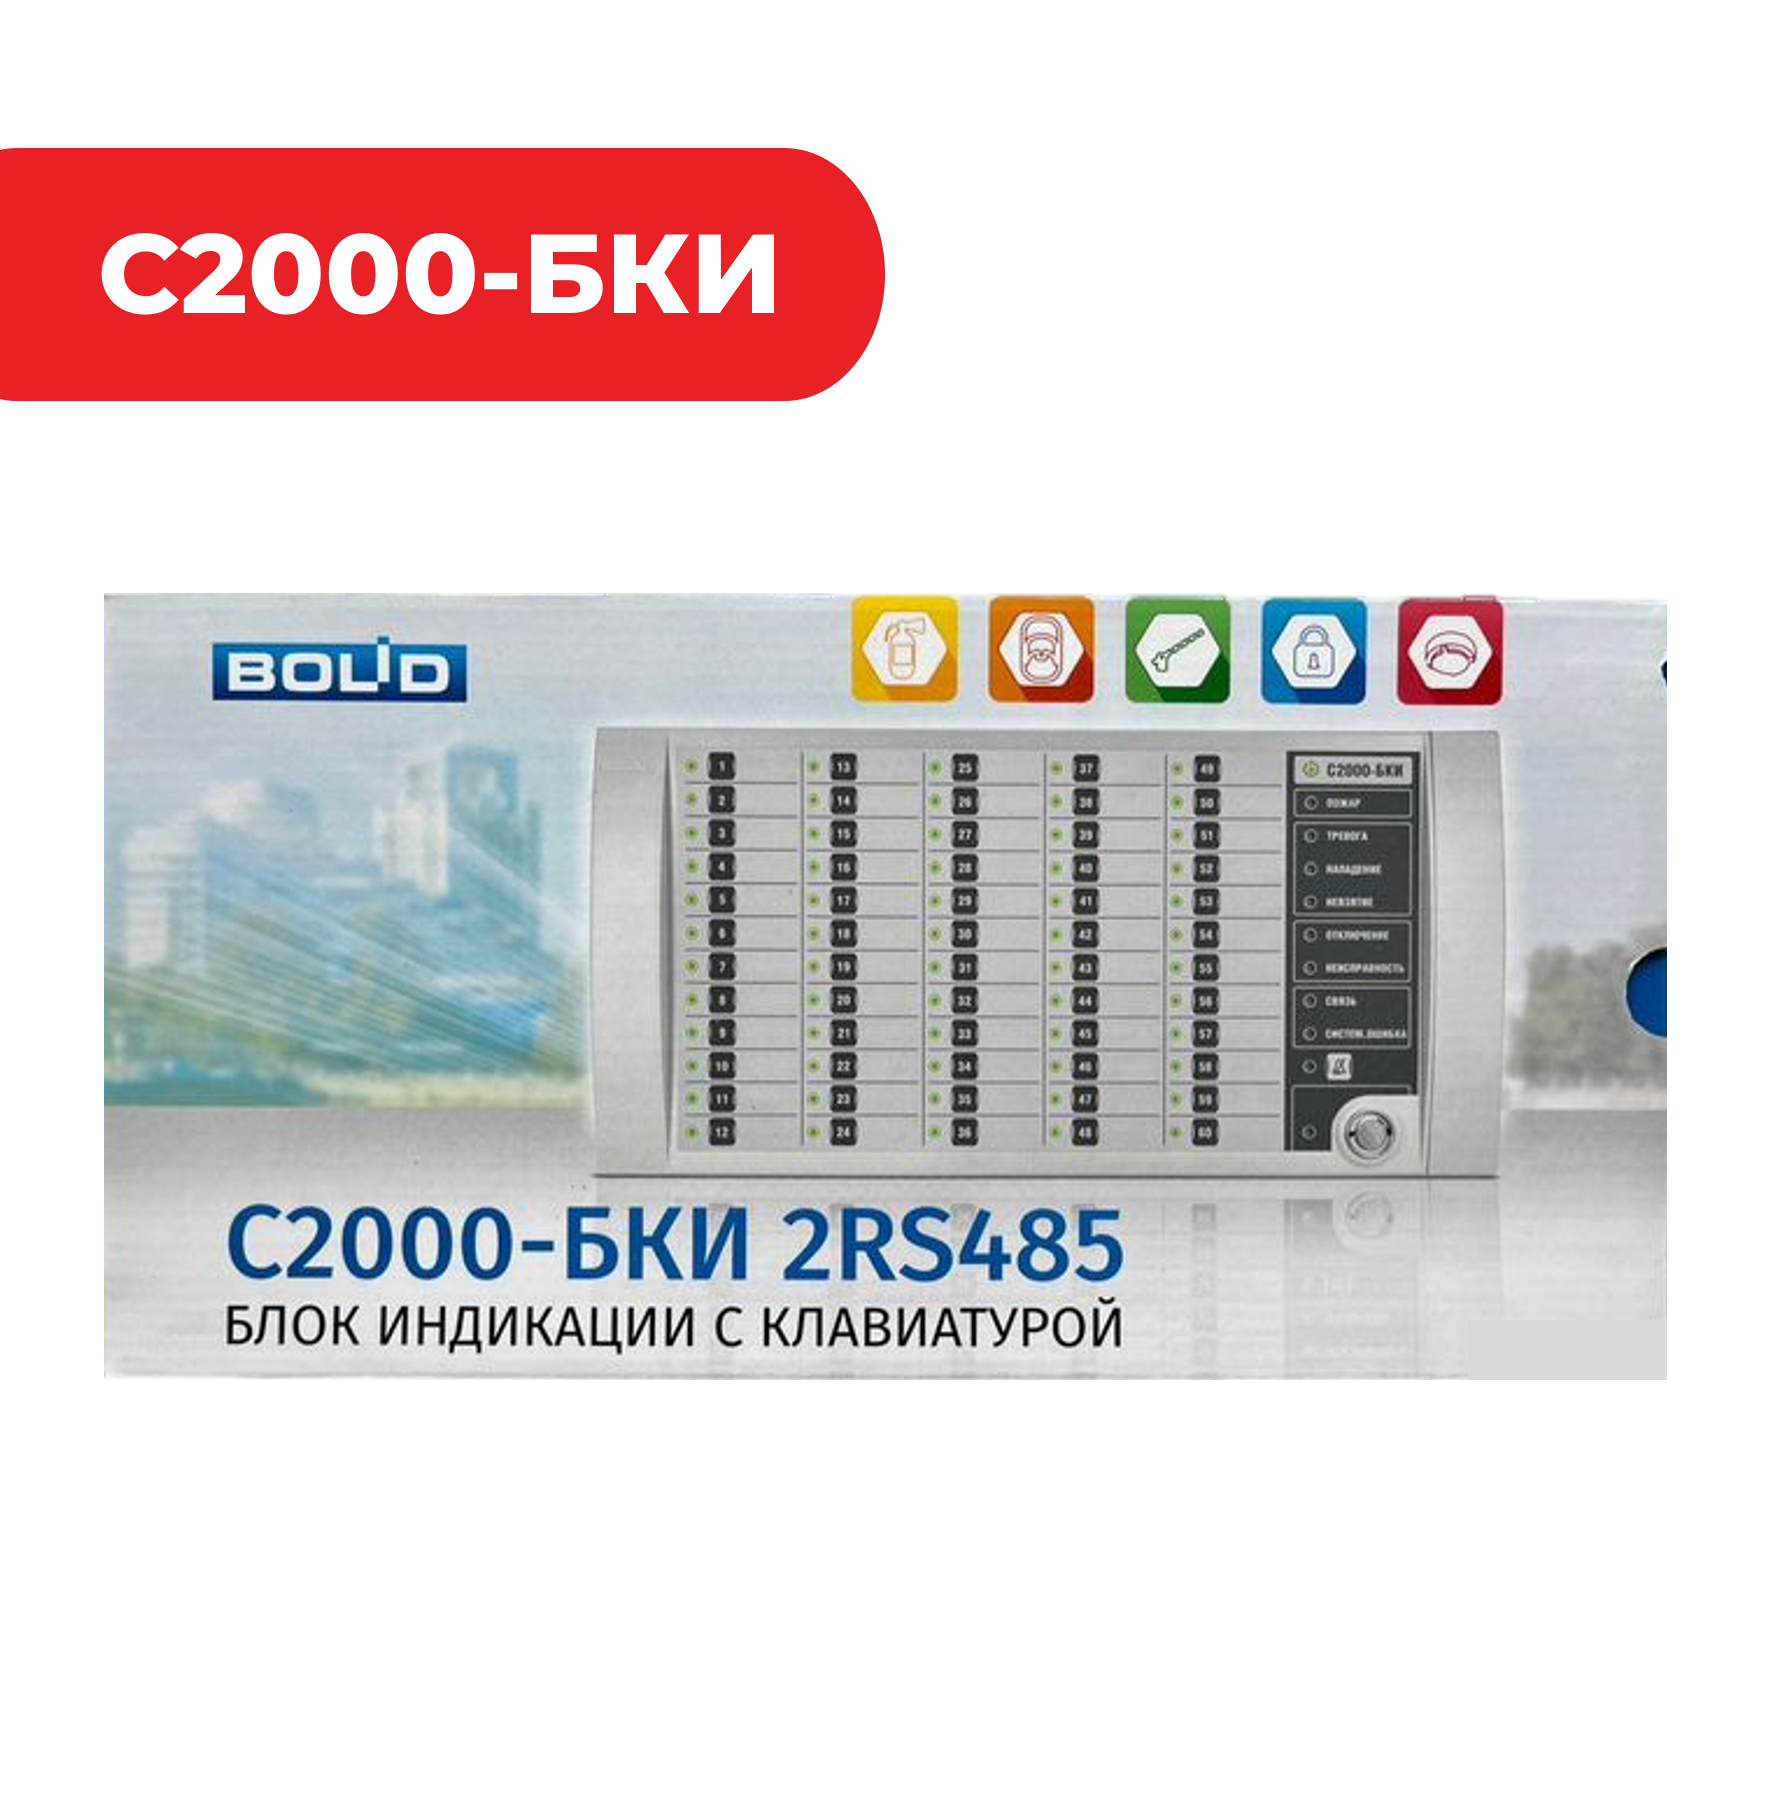 Блок индикации с клавиатурой С2000-БКИ 2RS485